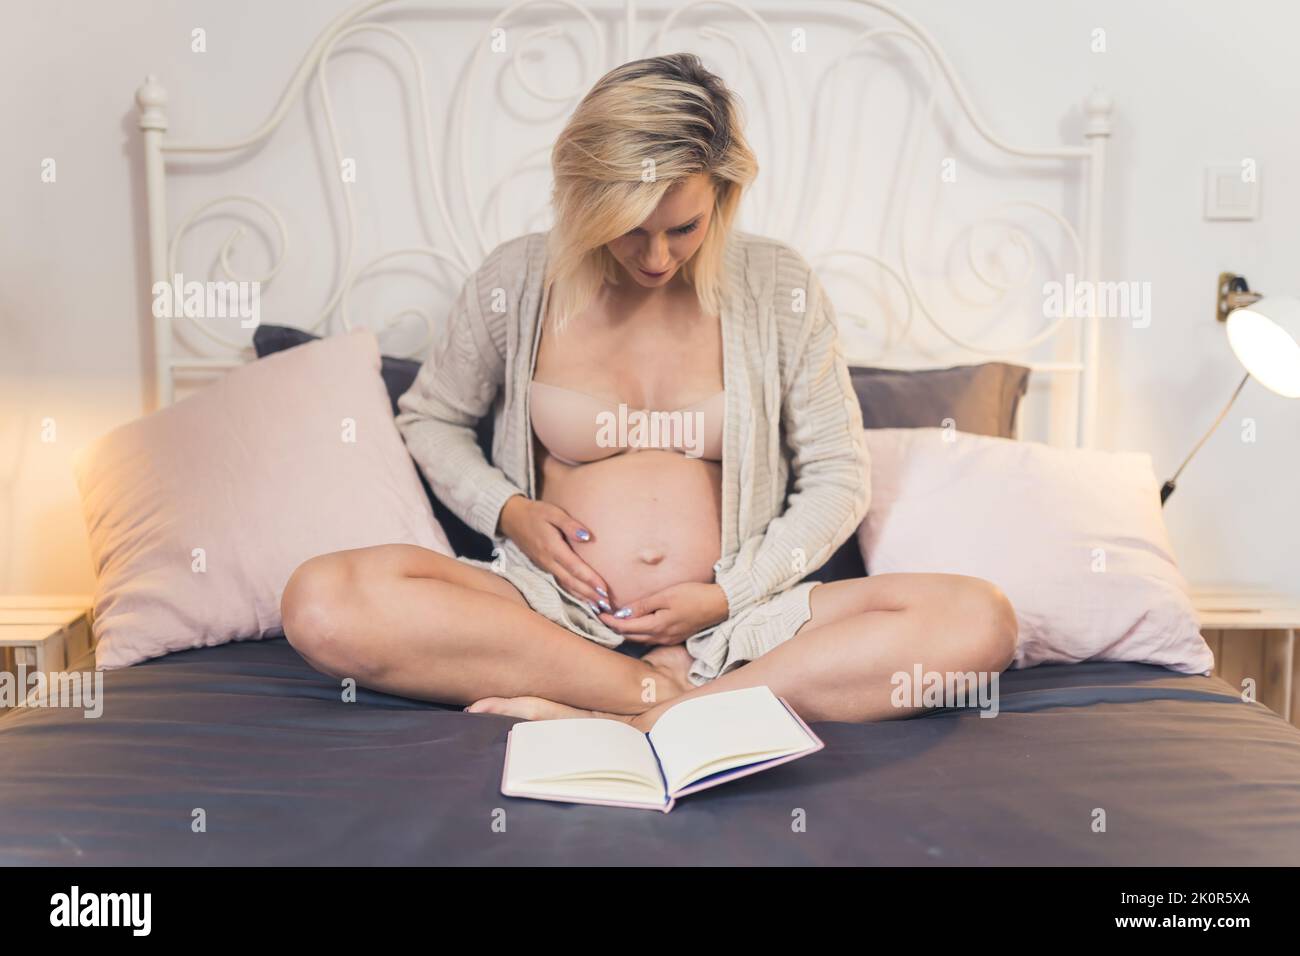 Giovane donna incinta con i capelli biondi seduti su un letto e toccando il ventre mentre legge un libro prima di andare a dormire. Cose da fare quando si aspetta un bambino. Foto di alta qualità Foto Stock